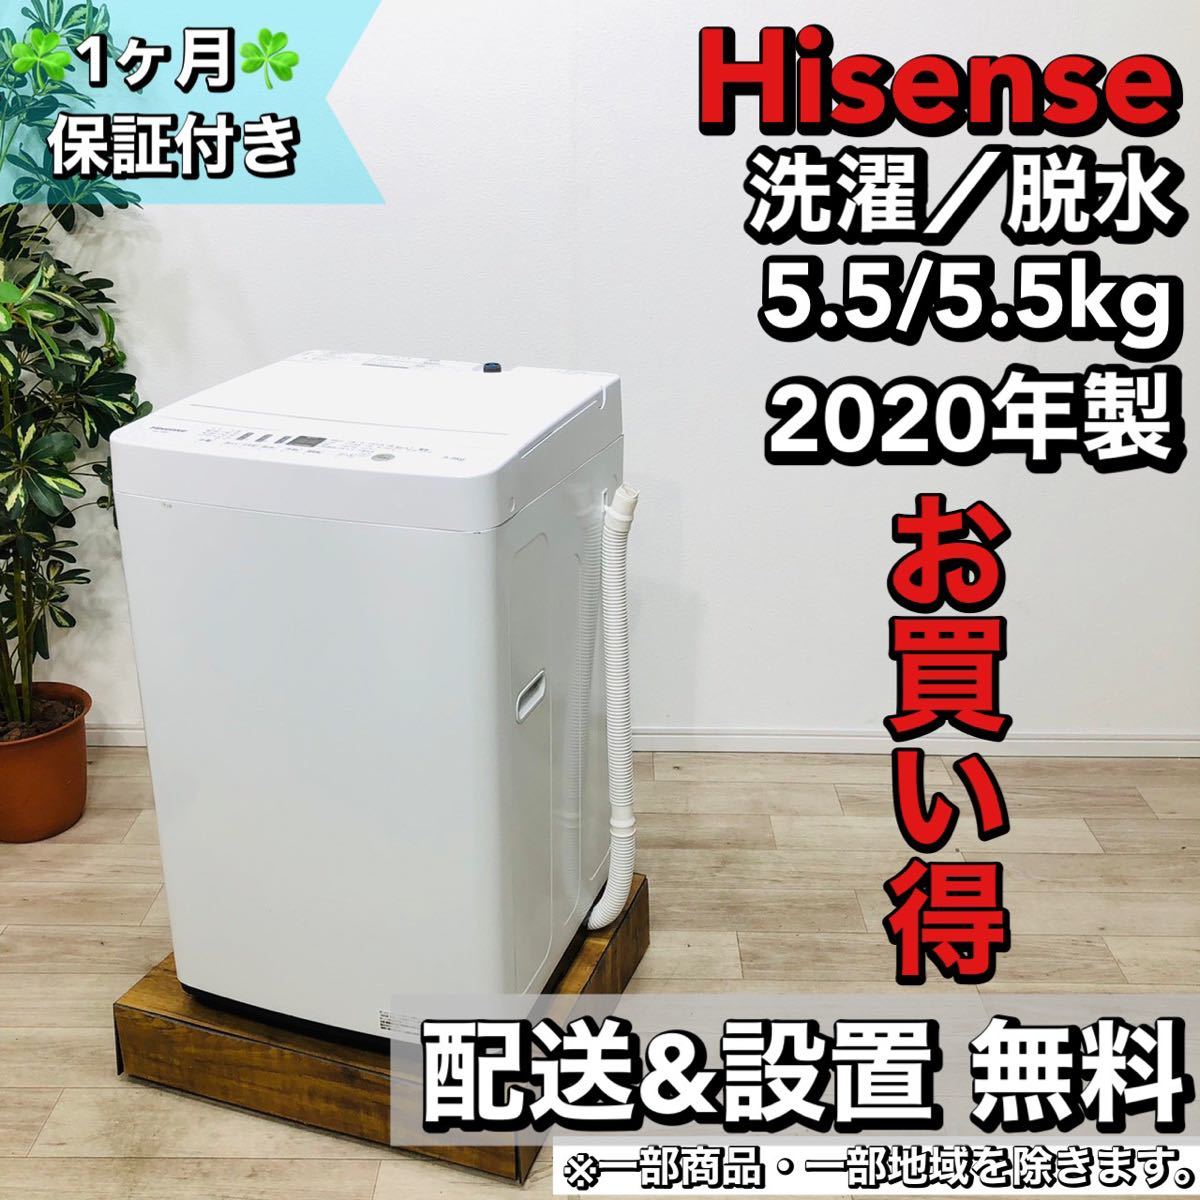 すぐったレディース福袋 Hisense a1538 洗濯機 5.5kg 2020年製 3.5 5kg